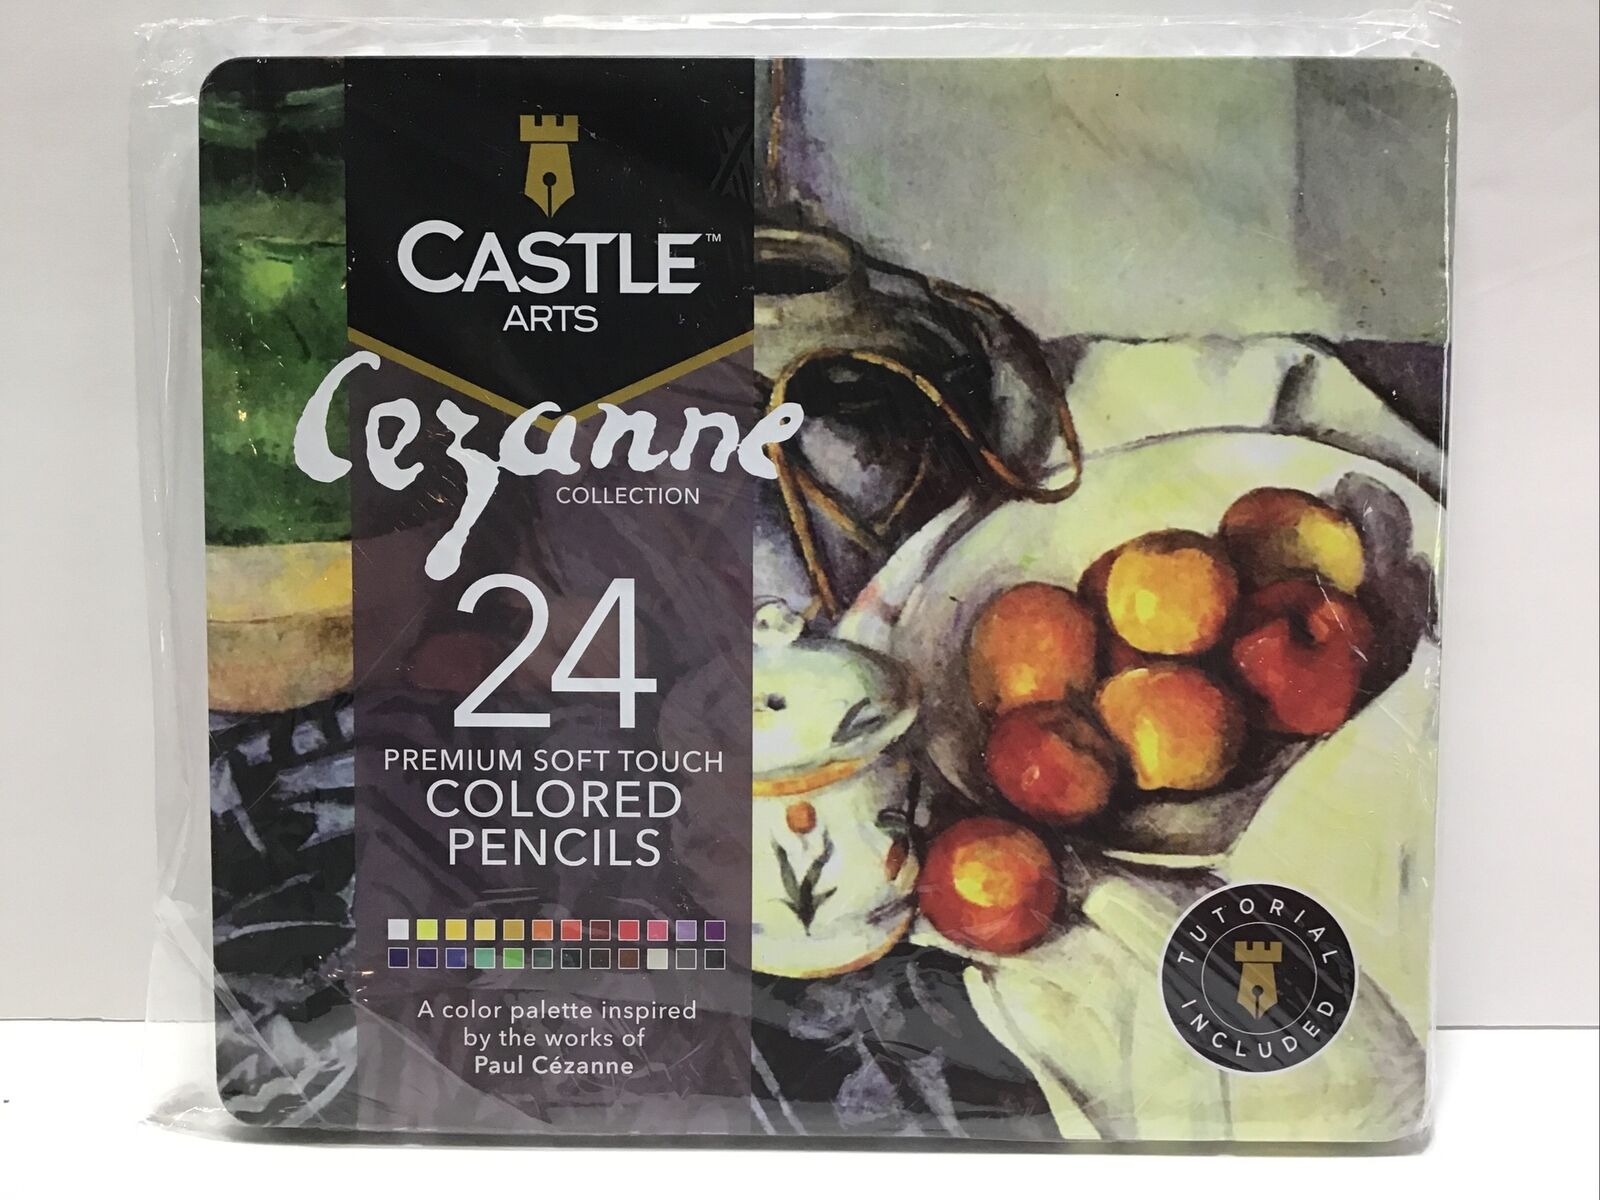 Castle arts, Cezanne Collection, 24 Premium Soft Touch Pencils